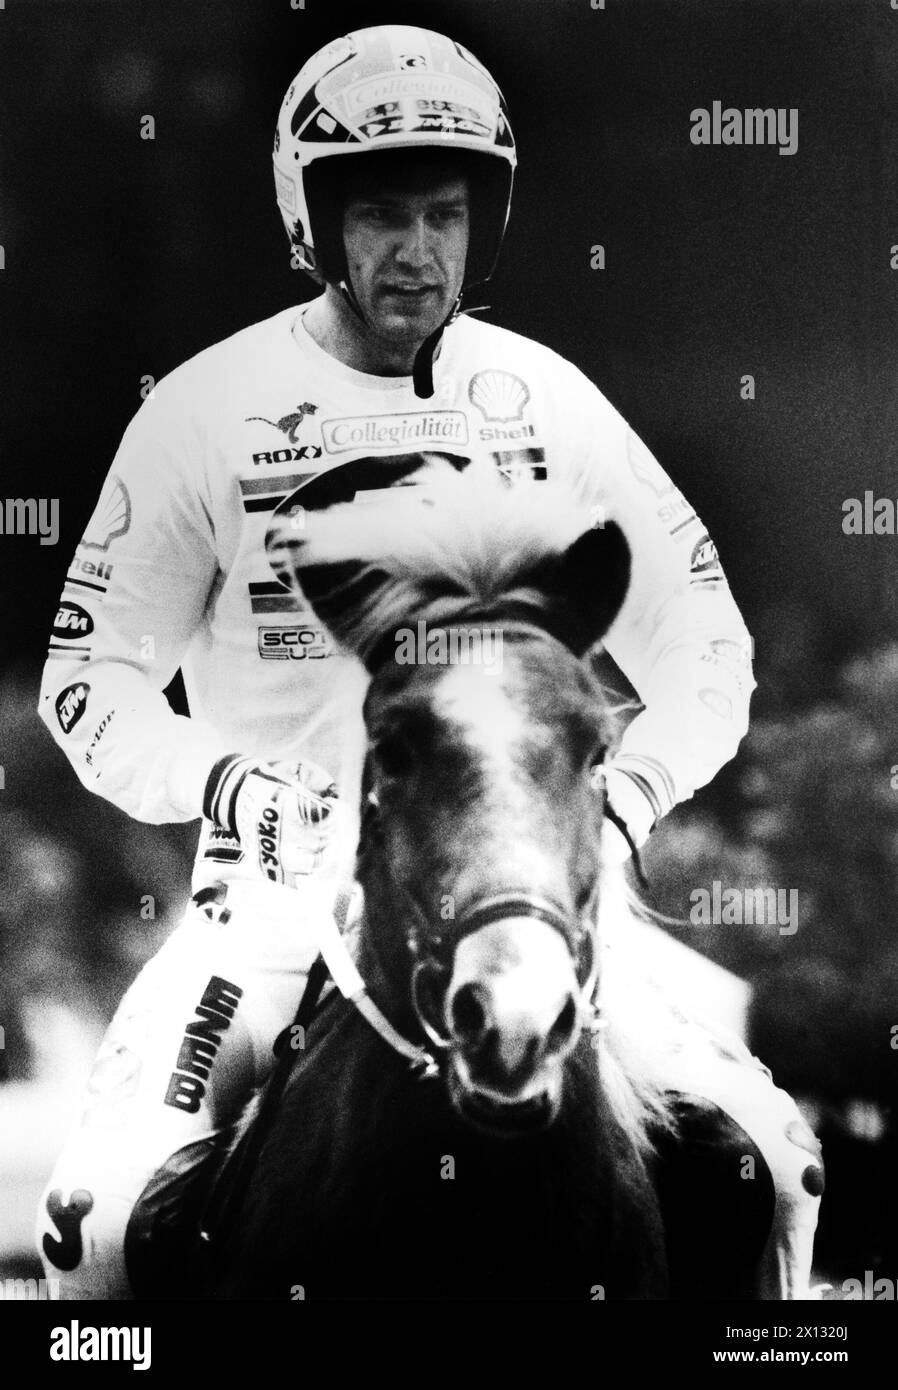 L'ancien champion du monde de motocross, Heinz Kinigadner, lors d'un spectacle équestre de célébrités au Stadthalle de Vienne le 10 novembre 1987. - 19871110 PD0012 - Rechteinfo : droits gérés (RM) Banque D'Images